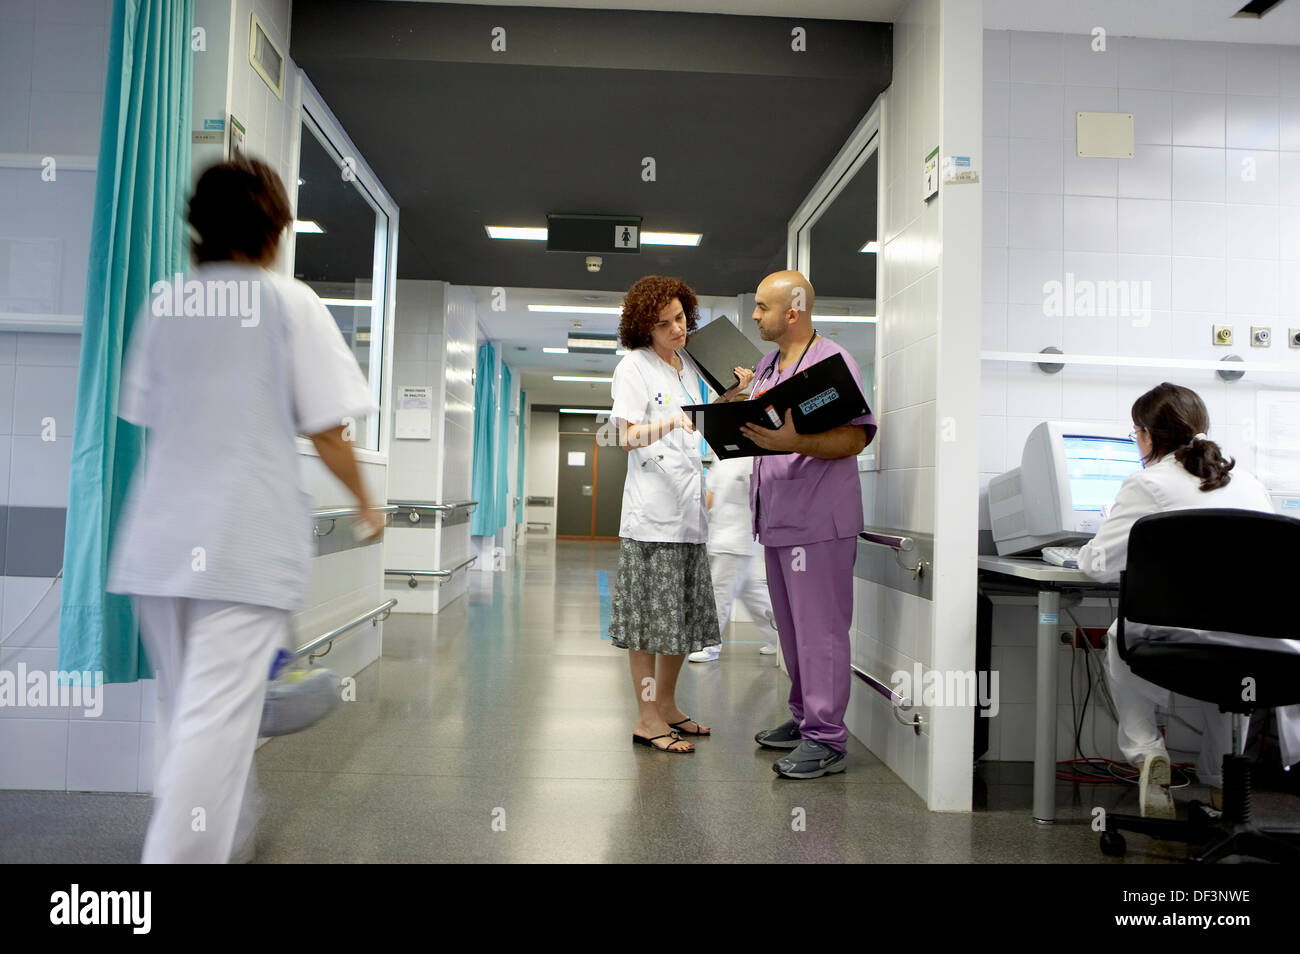 Emergency room. Hospital Universitario Gran Canaria Doctor Negrin, Las  Palmas de Gran Canaria. Canary Islands, Spain Stock Photo - Alamy